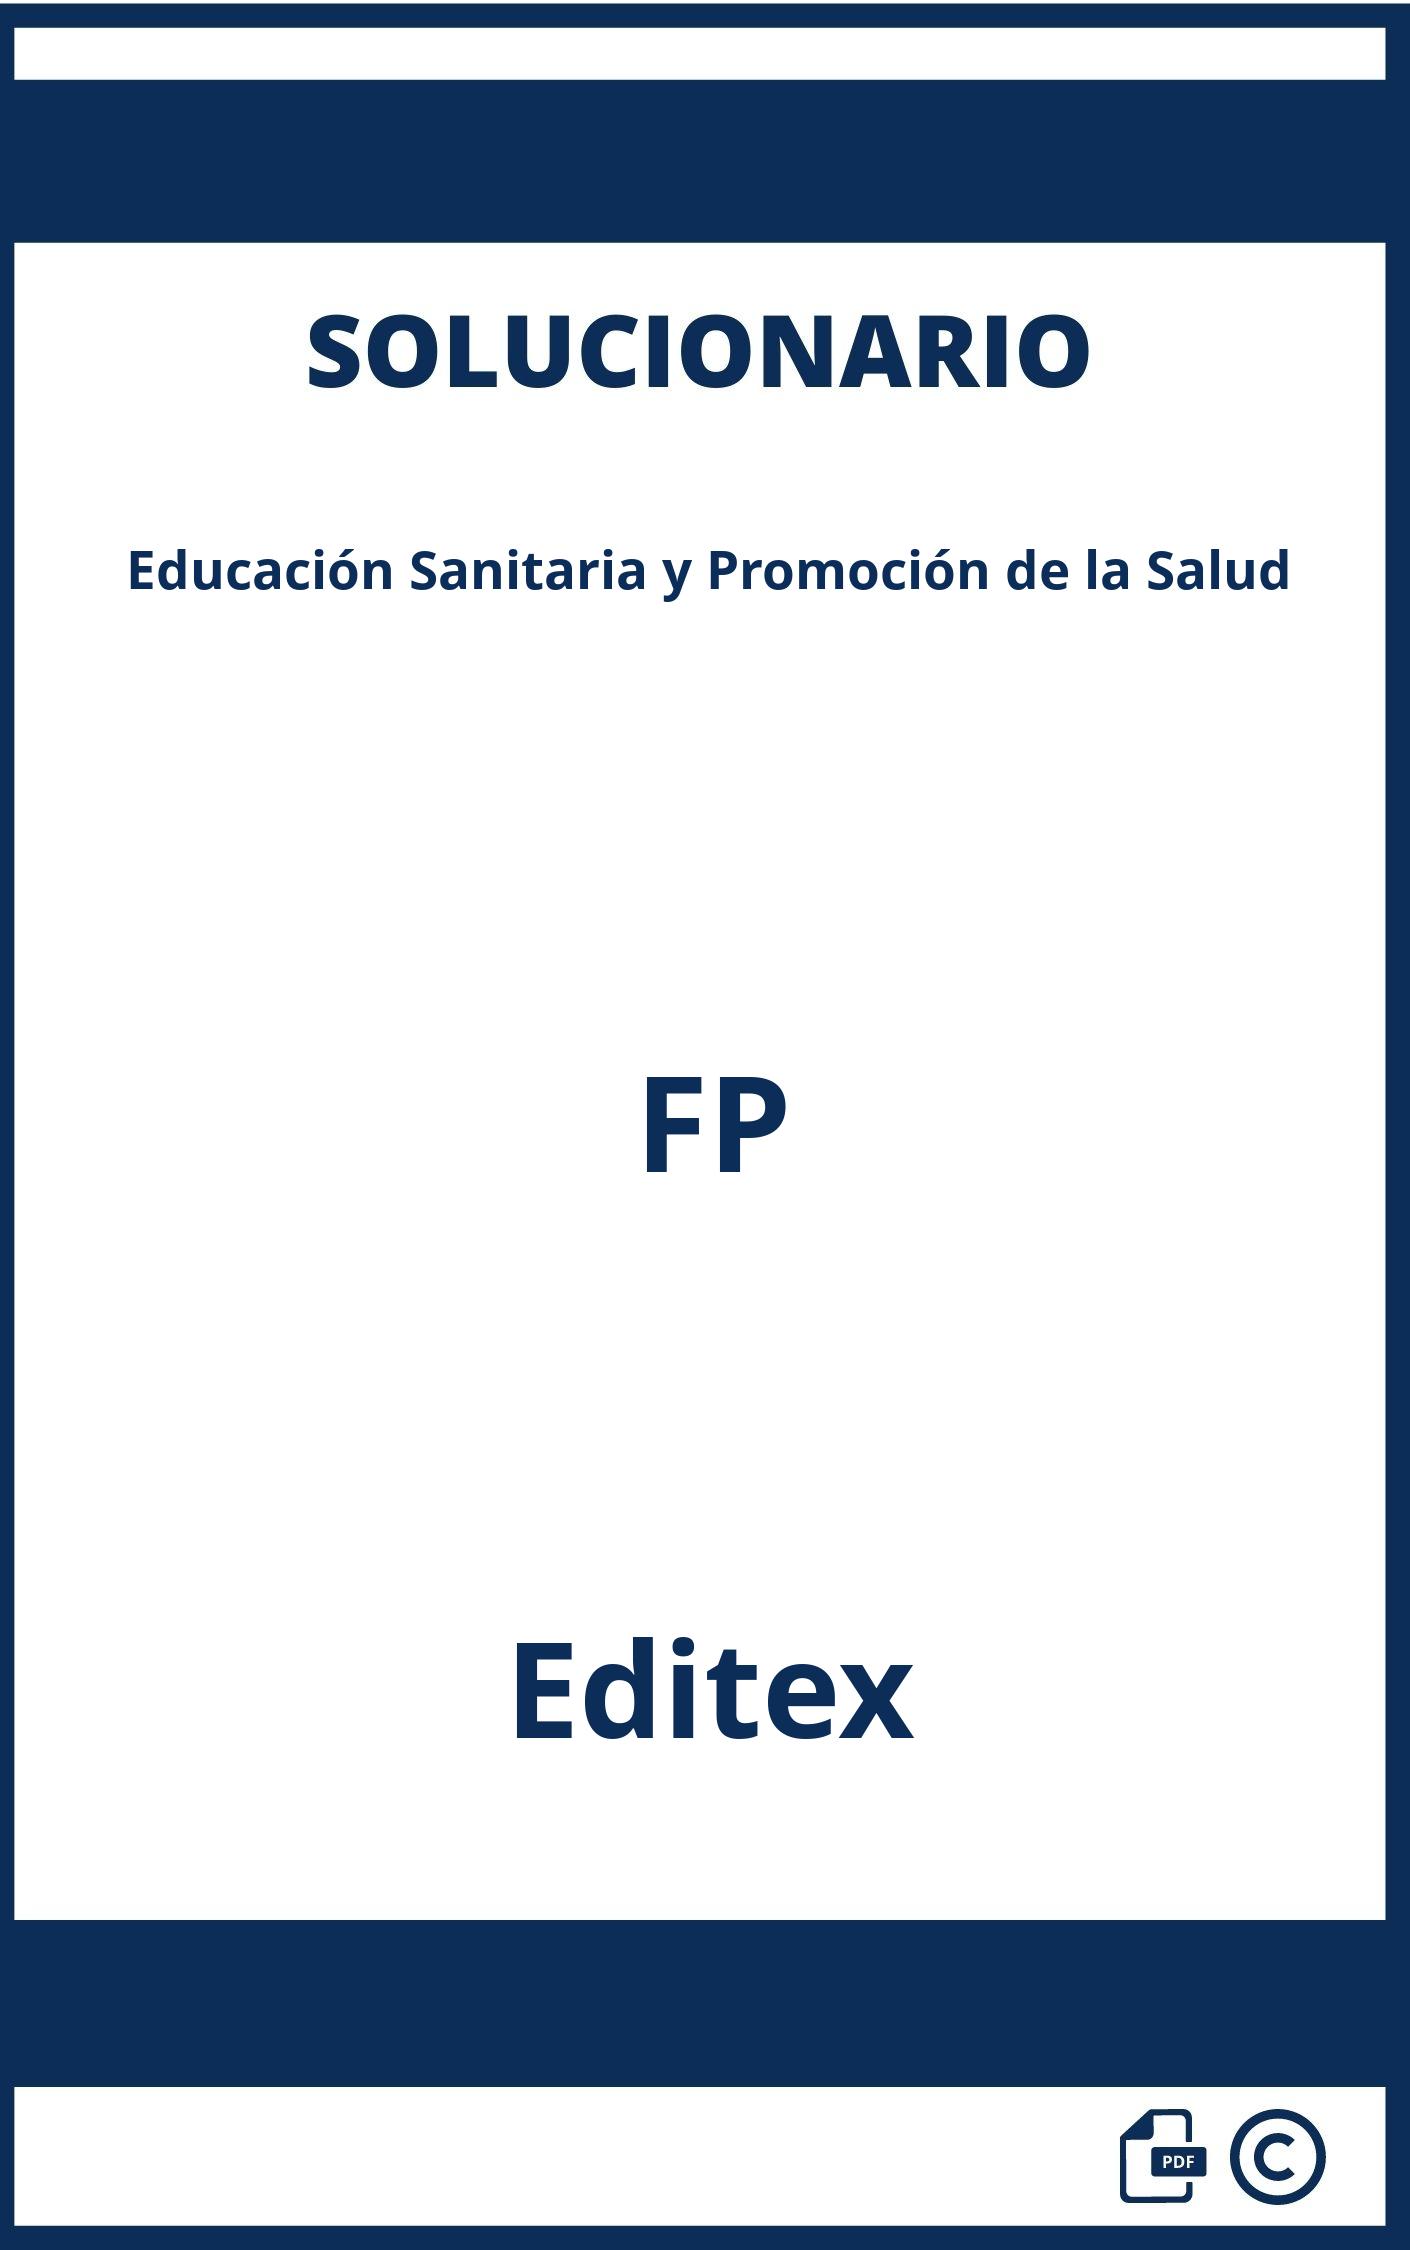 Solucionario Educación Sanitaria y Promoción de la Salud FP Editex